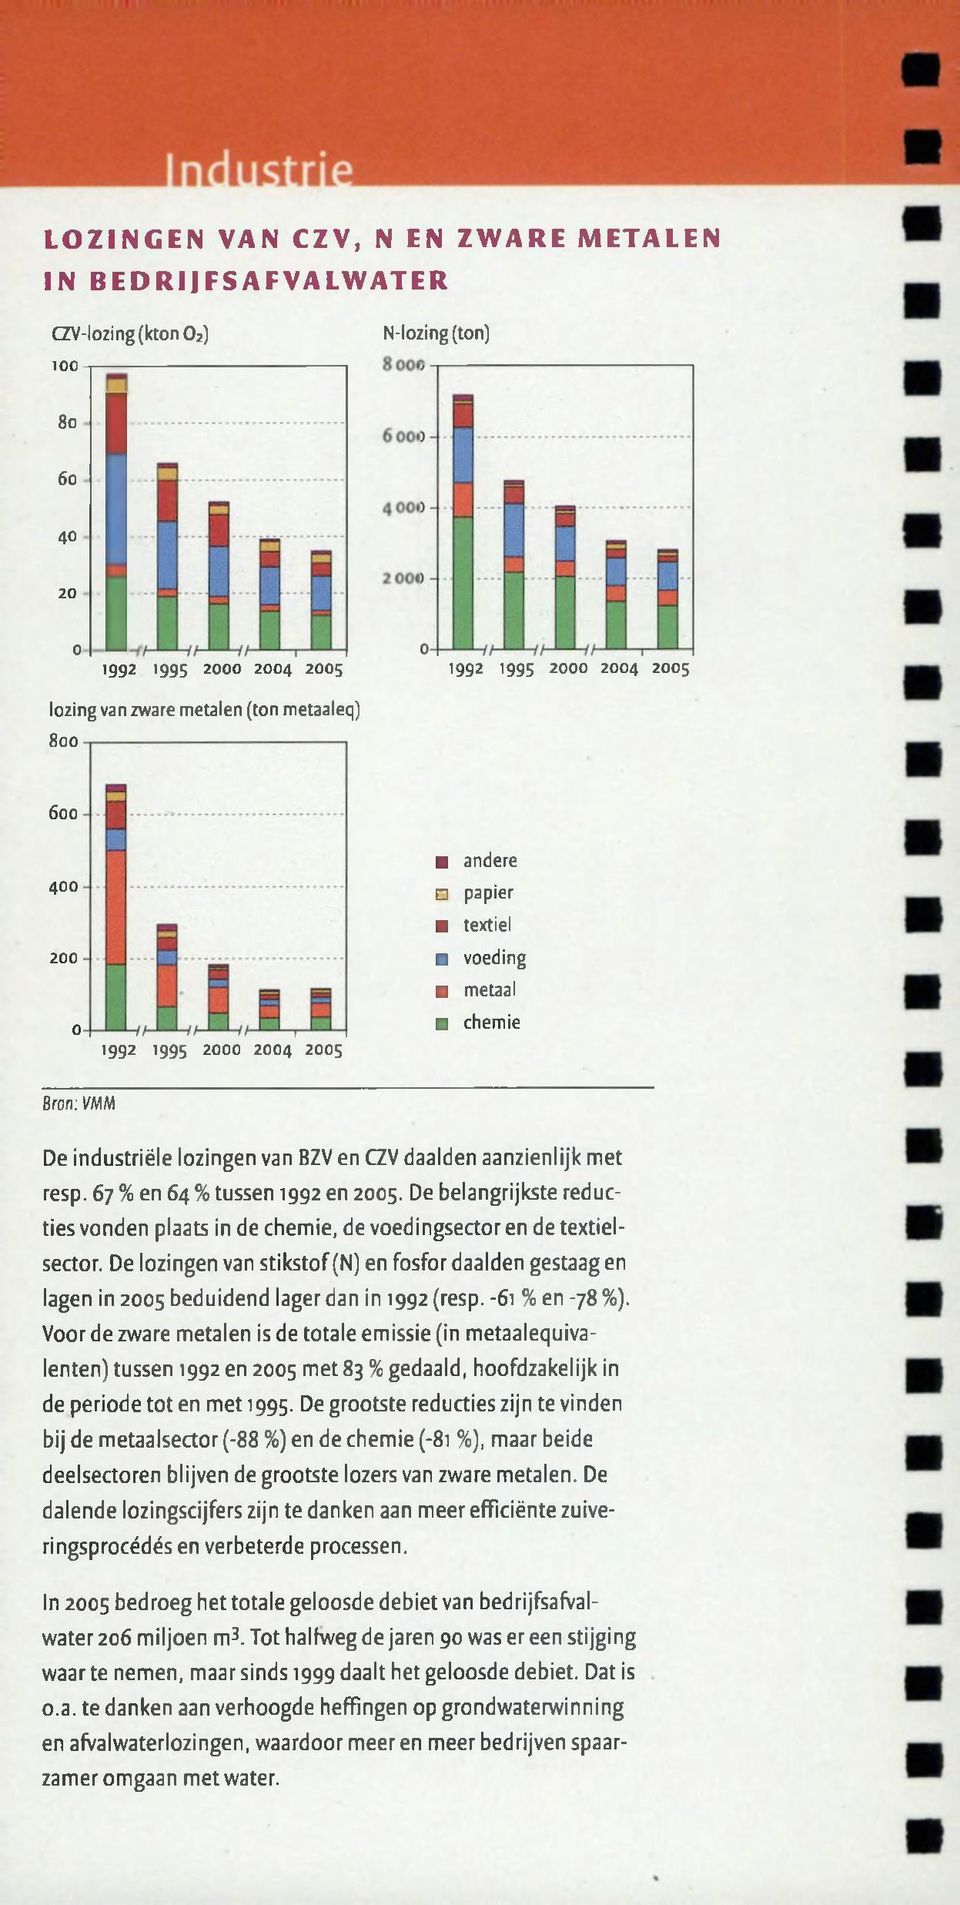 67 % en 64 % tussen 1992 en 2005. De belangrijkste reducties vonden plaats in de chemie, de voedingsector en de textielsector.